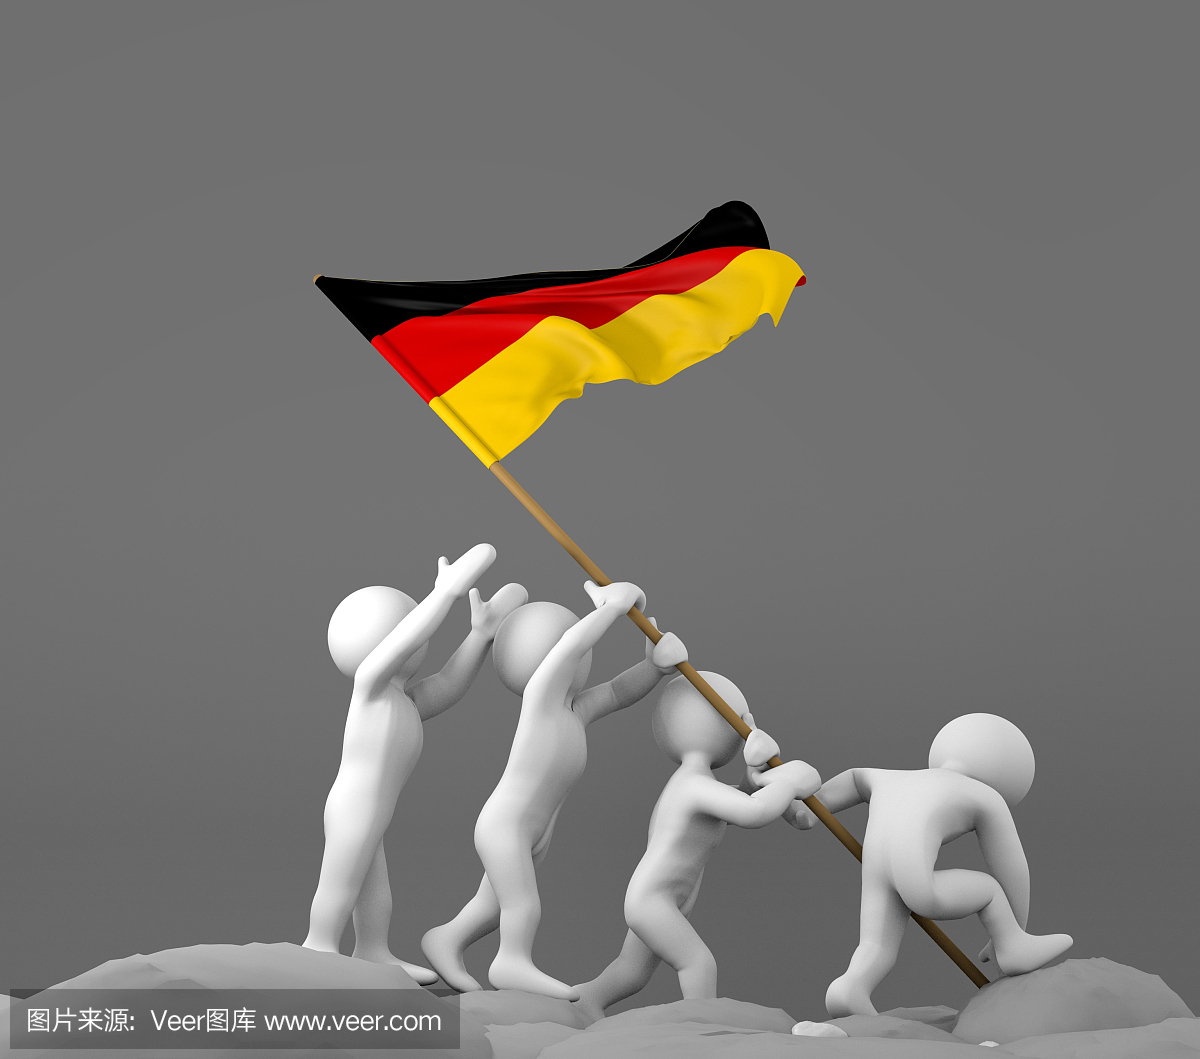 四个字符持有德国国旗